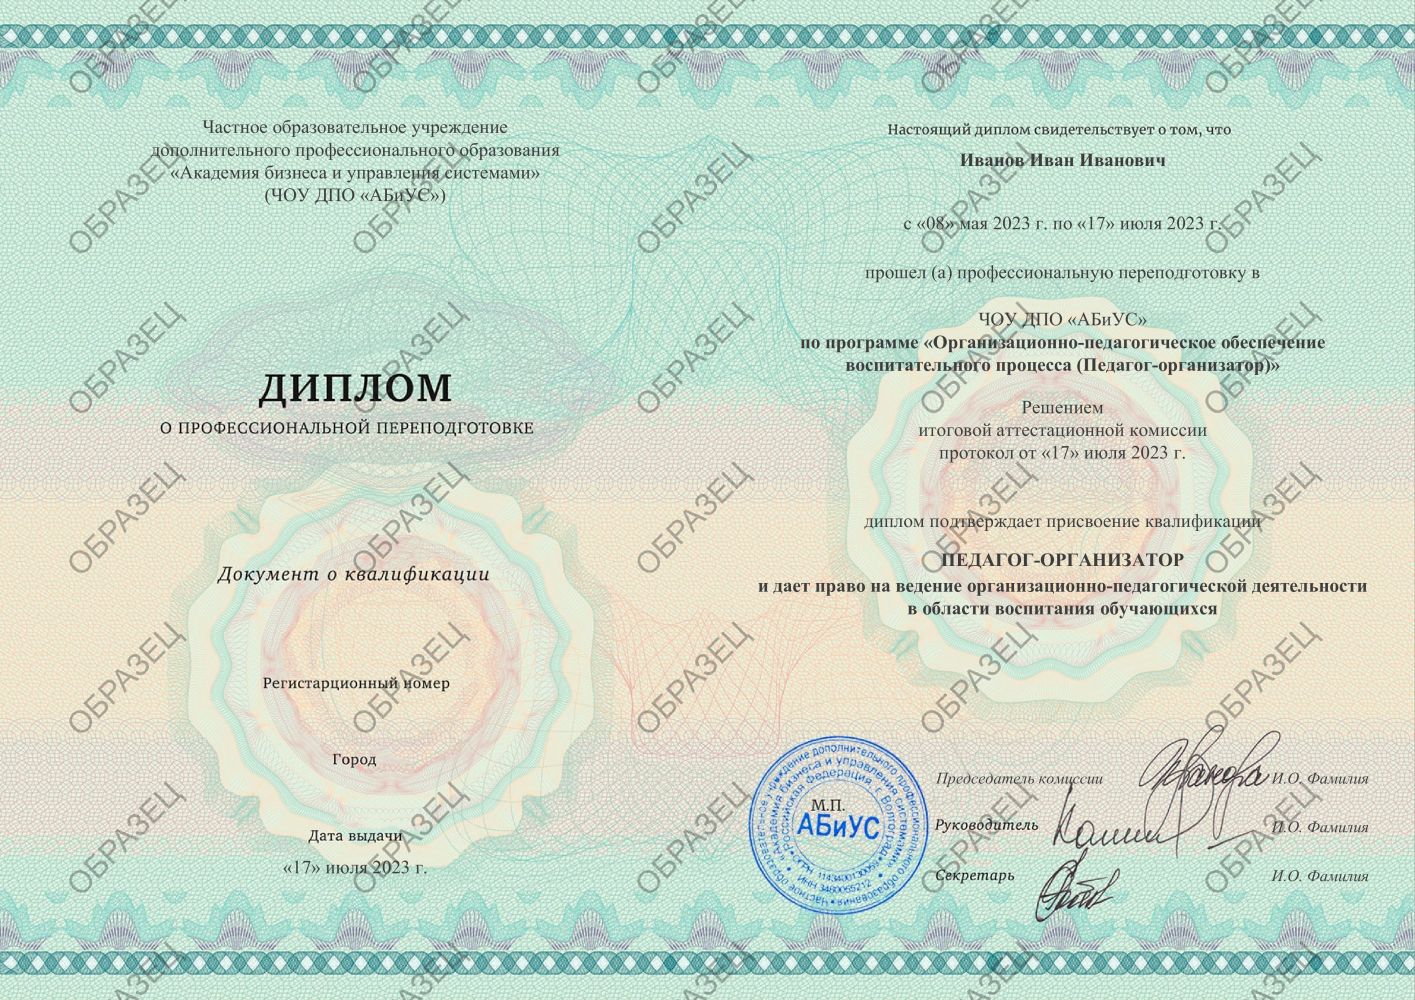 Диплом Организационно-педагогическое обеспечение воспитательного процесса (Педагог-организатор) 260 часов 7813 руб.